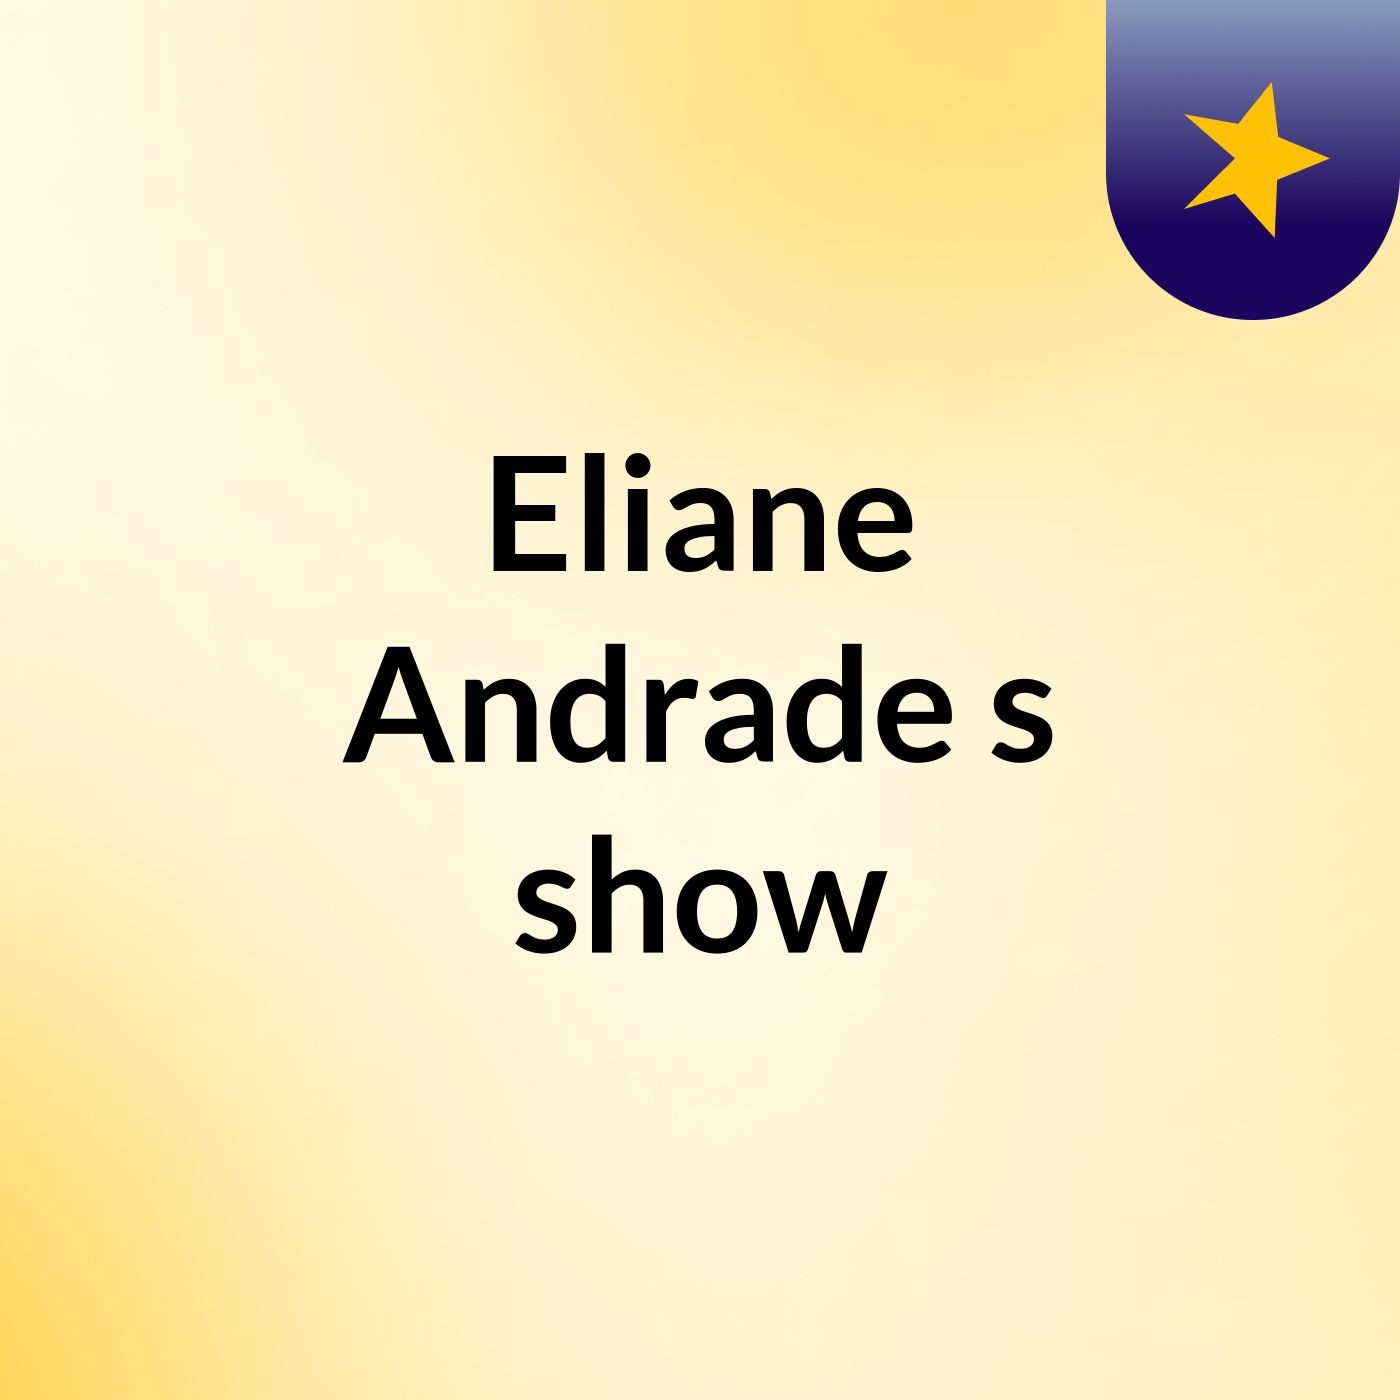 Episódio 6 - Eliane Andrade's show